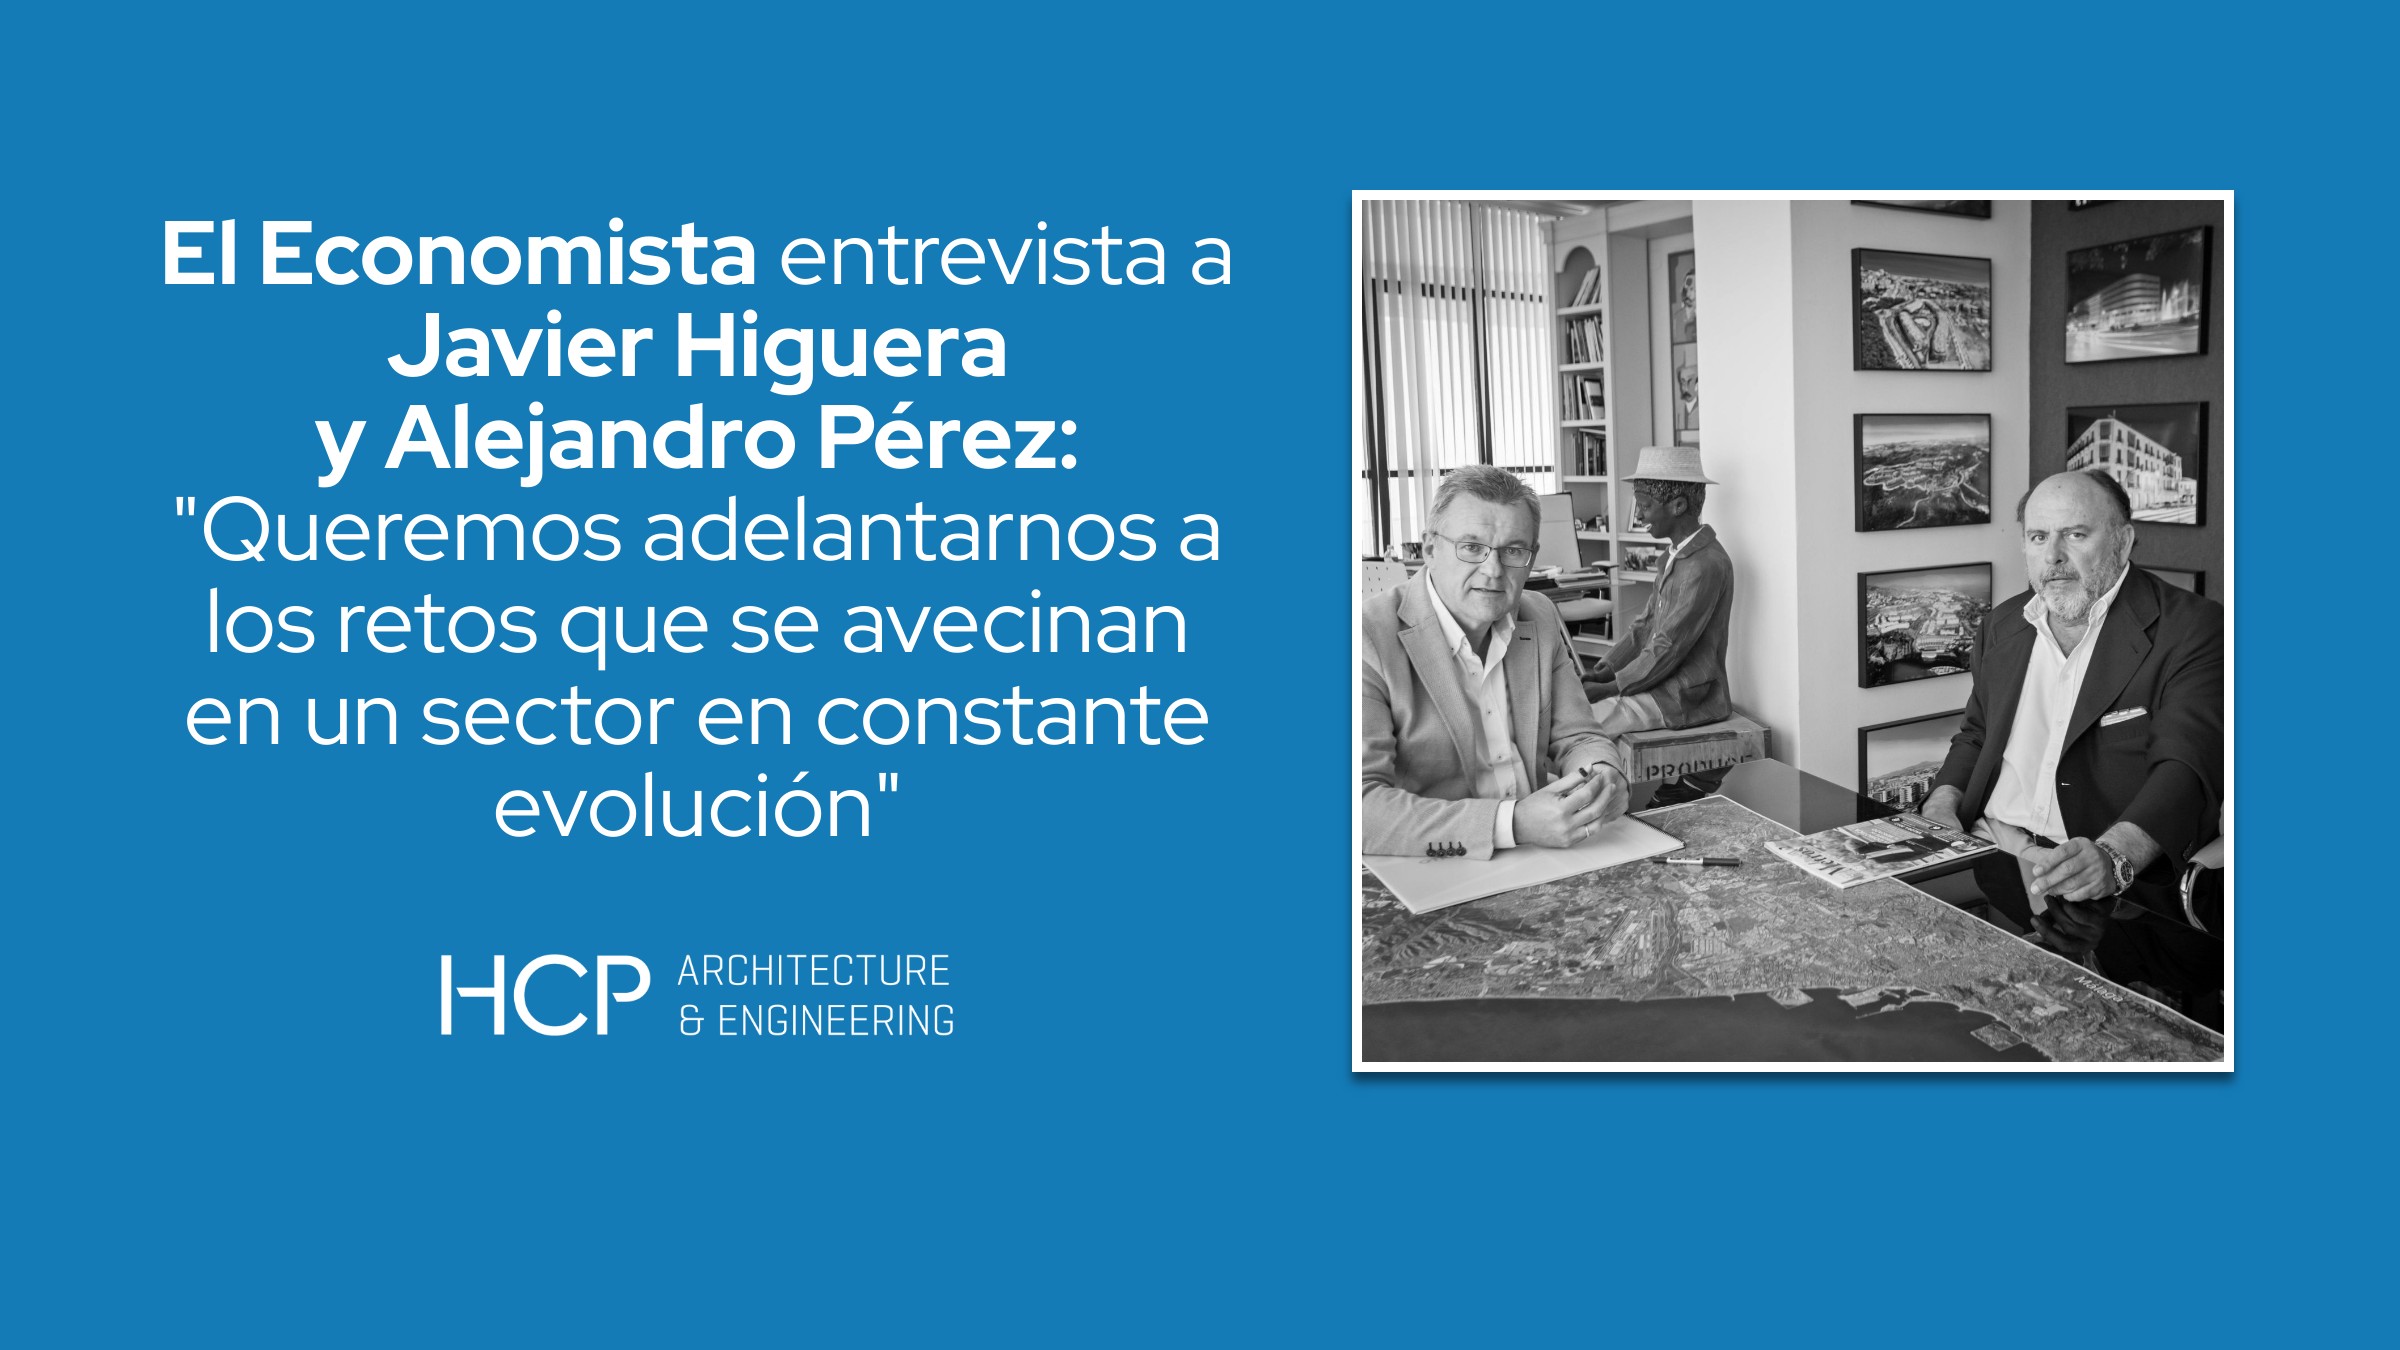 El diario económico El Economista entrevista a Javier Higuera y Alejandro Pérez, socios fundadores de HCP